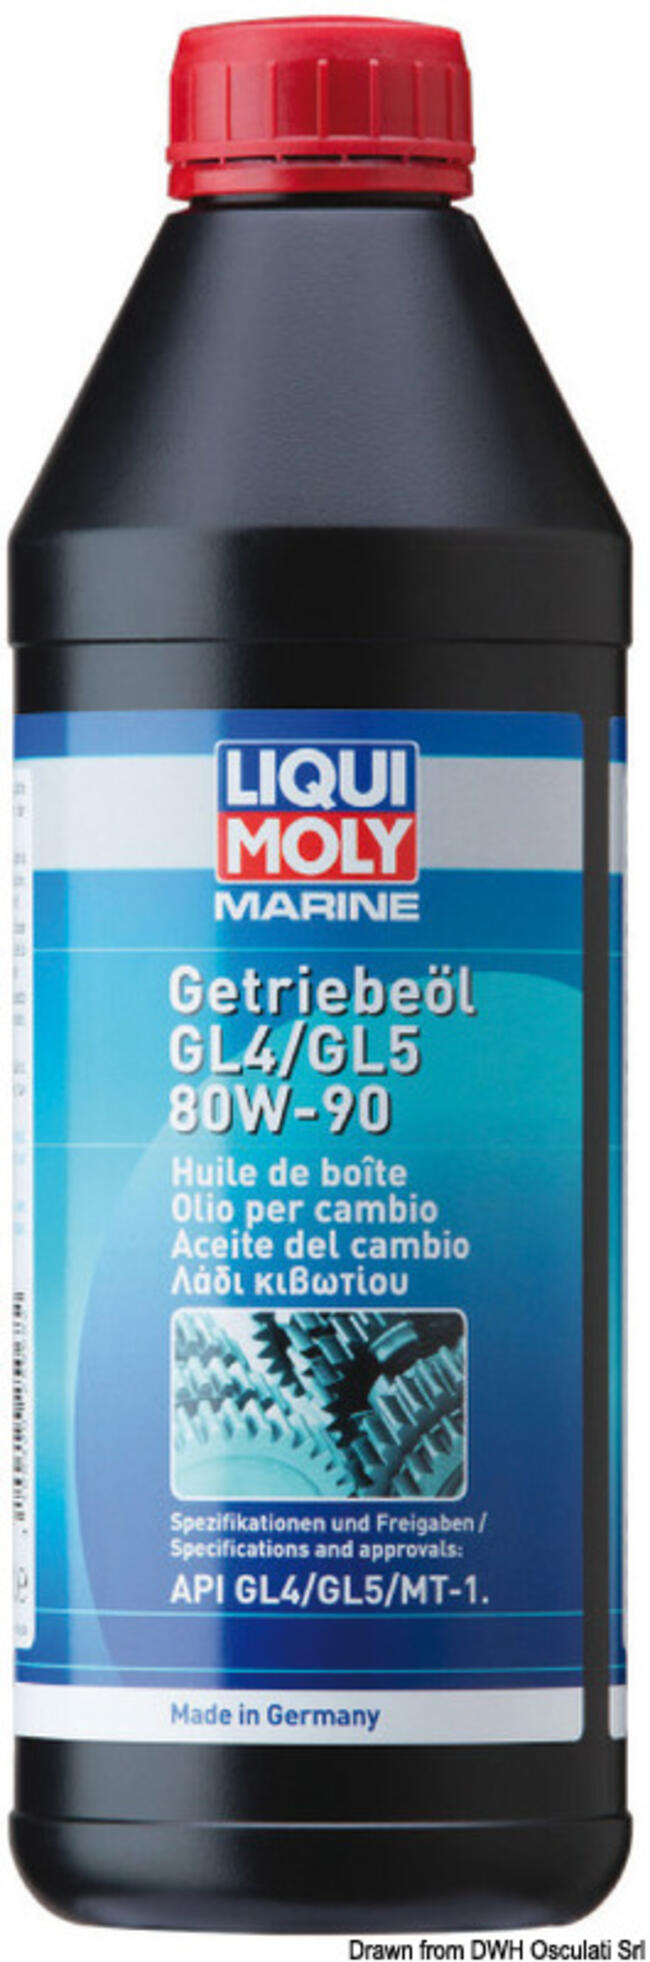 Marine Olio Piede Poppiero Gl4/gl5 80w-90 - 1 L